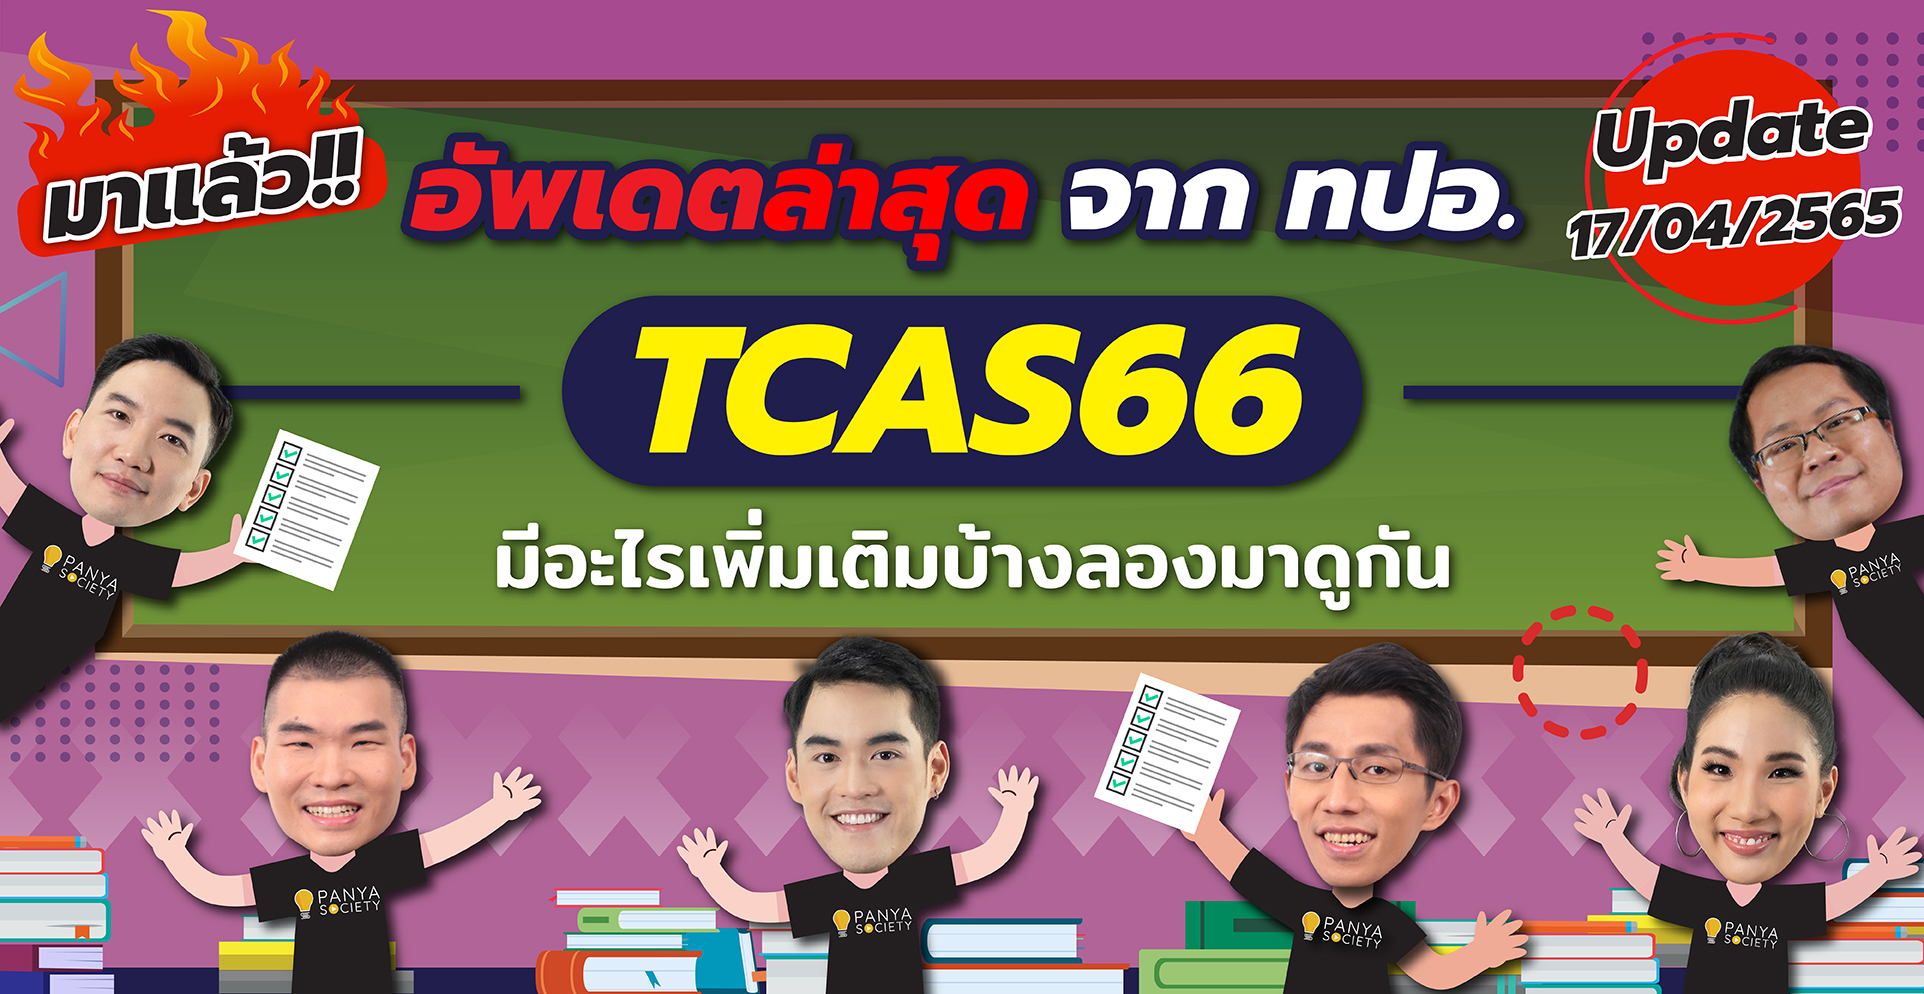 TCAS66 TGAT TPAT A-Level Schedule Cover